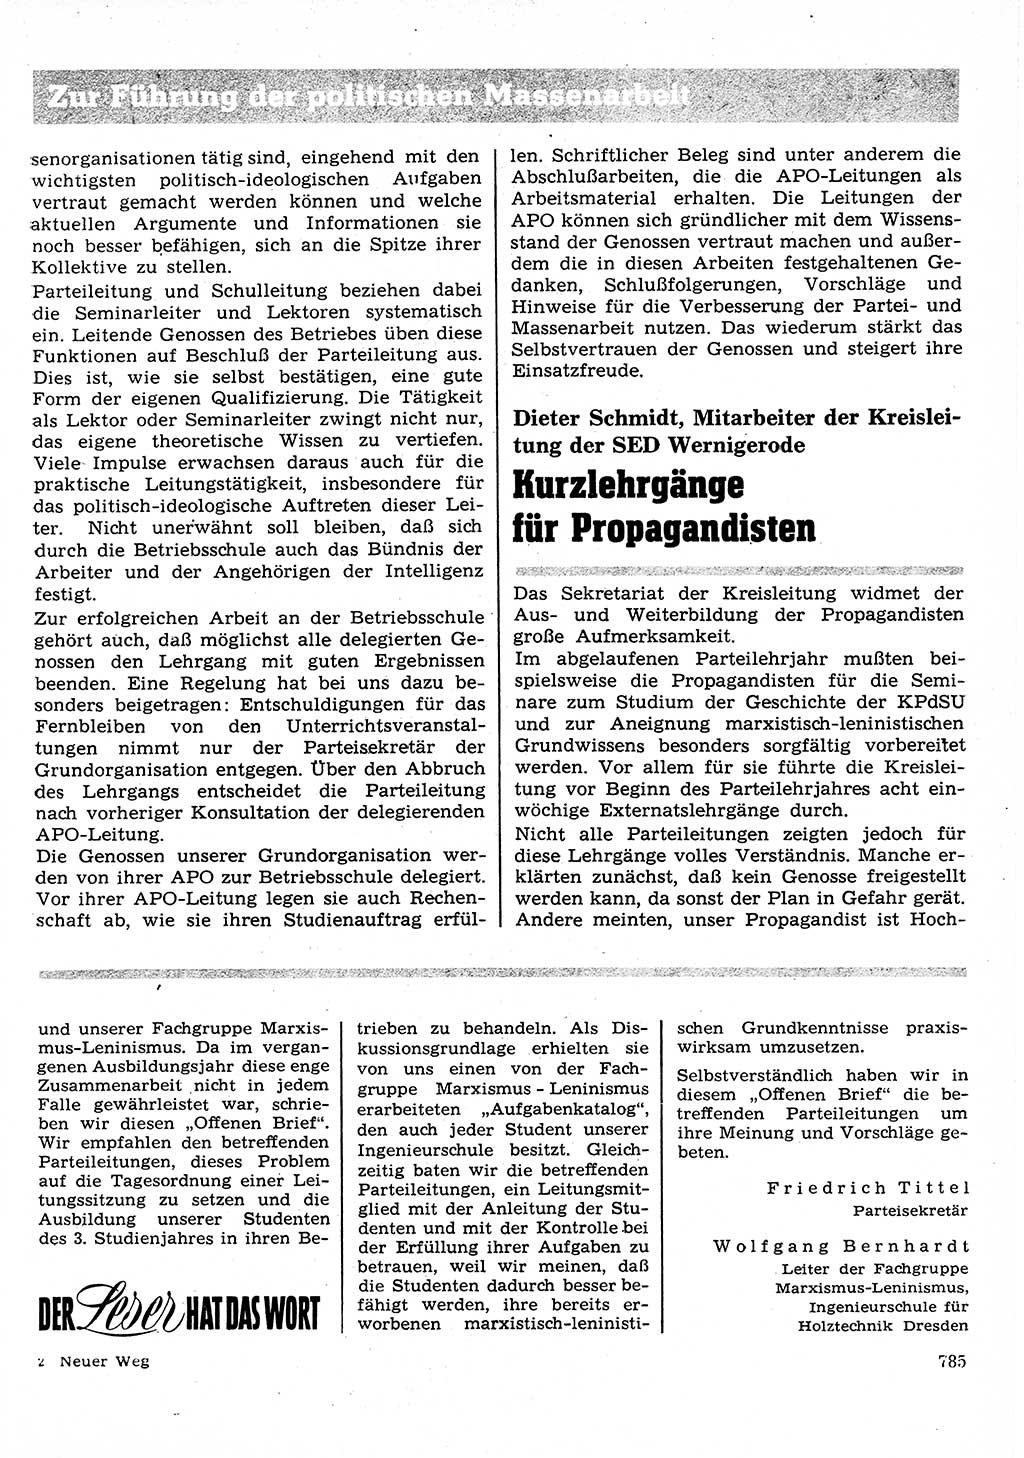 Neuer Weg (NW), Organ des Zentralkomitees (ZK) der SED (Sozialistische Einheitspartei Deutschlands) für Fragen des Parteilebens, 27. Jahrgang [Deutsche Demokratische Republik (DDR)] 1972, Seite 785 (NW ZK SED DDR 1972, S. 785)